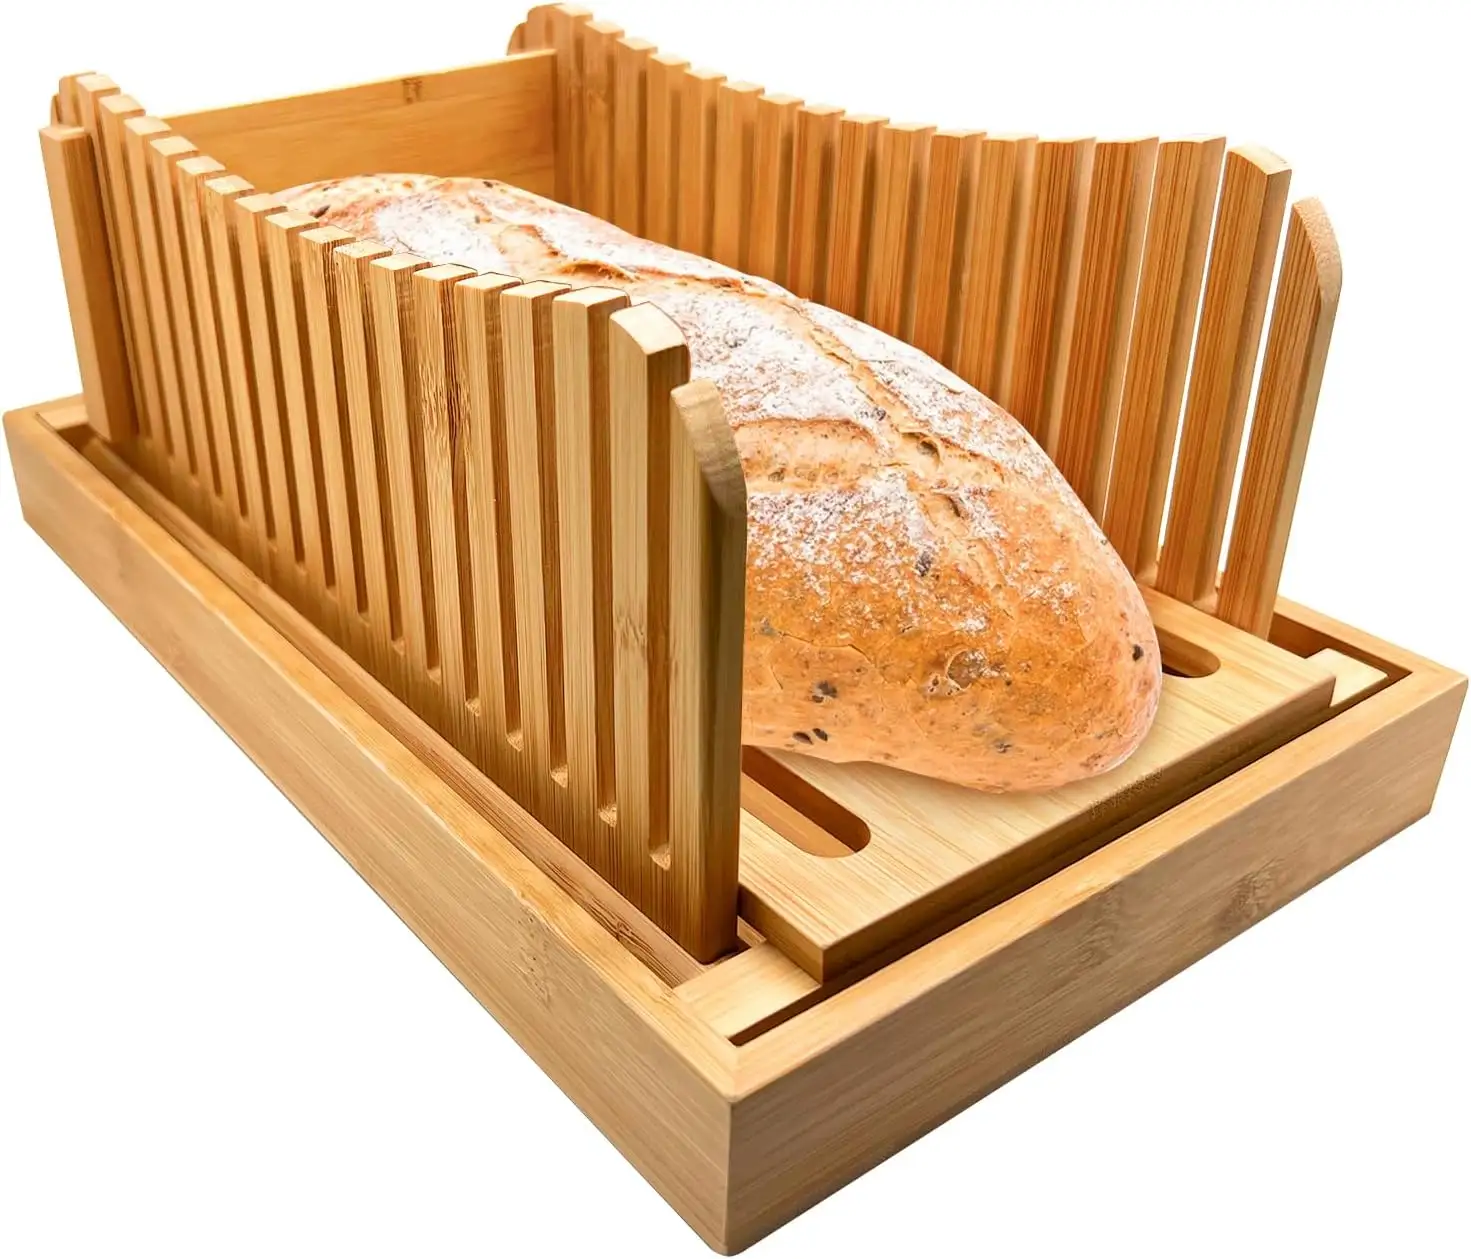 Mesin pengiris roti bambu, untuk buatan rumah bisa disesuaikan panduan pengiris roti